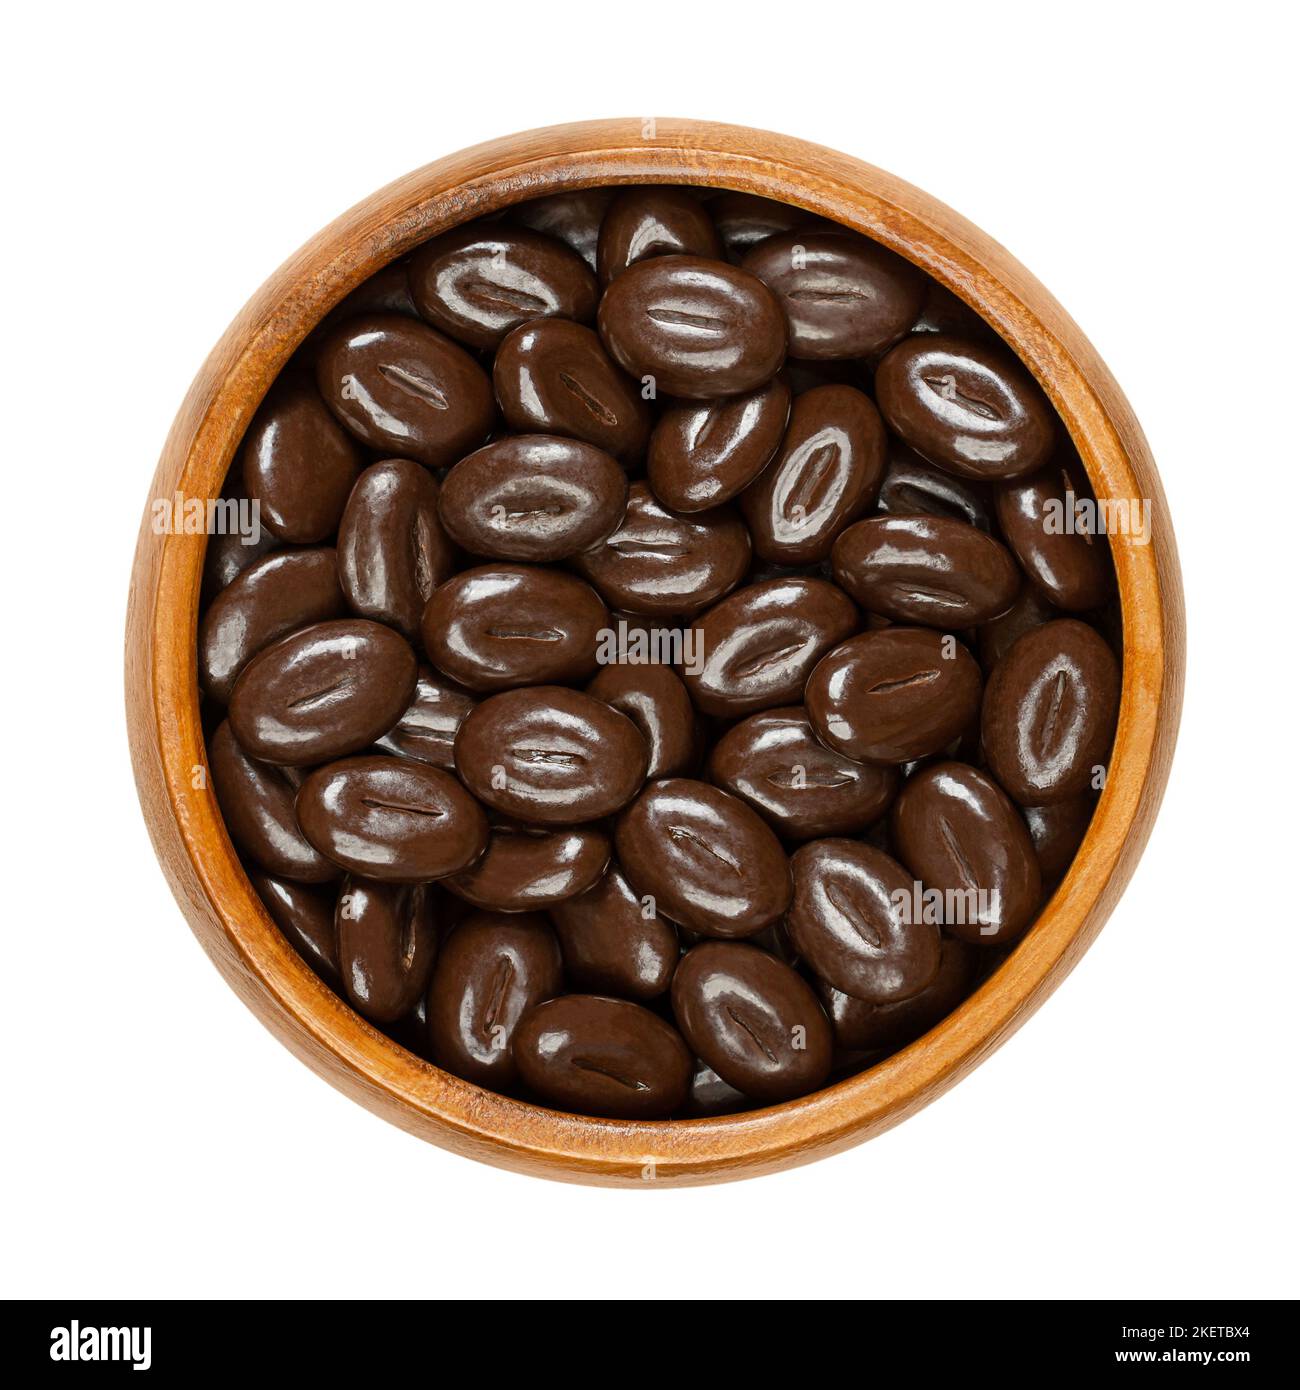 Grains de moka au chocolat noir, dans un bol en bois. Bonbons à base de grains de café et de chocolat noir, en forme de grains de café. Banque D'Images